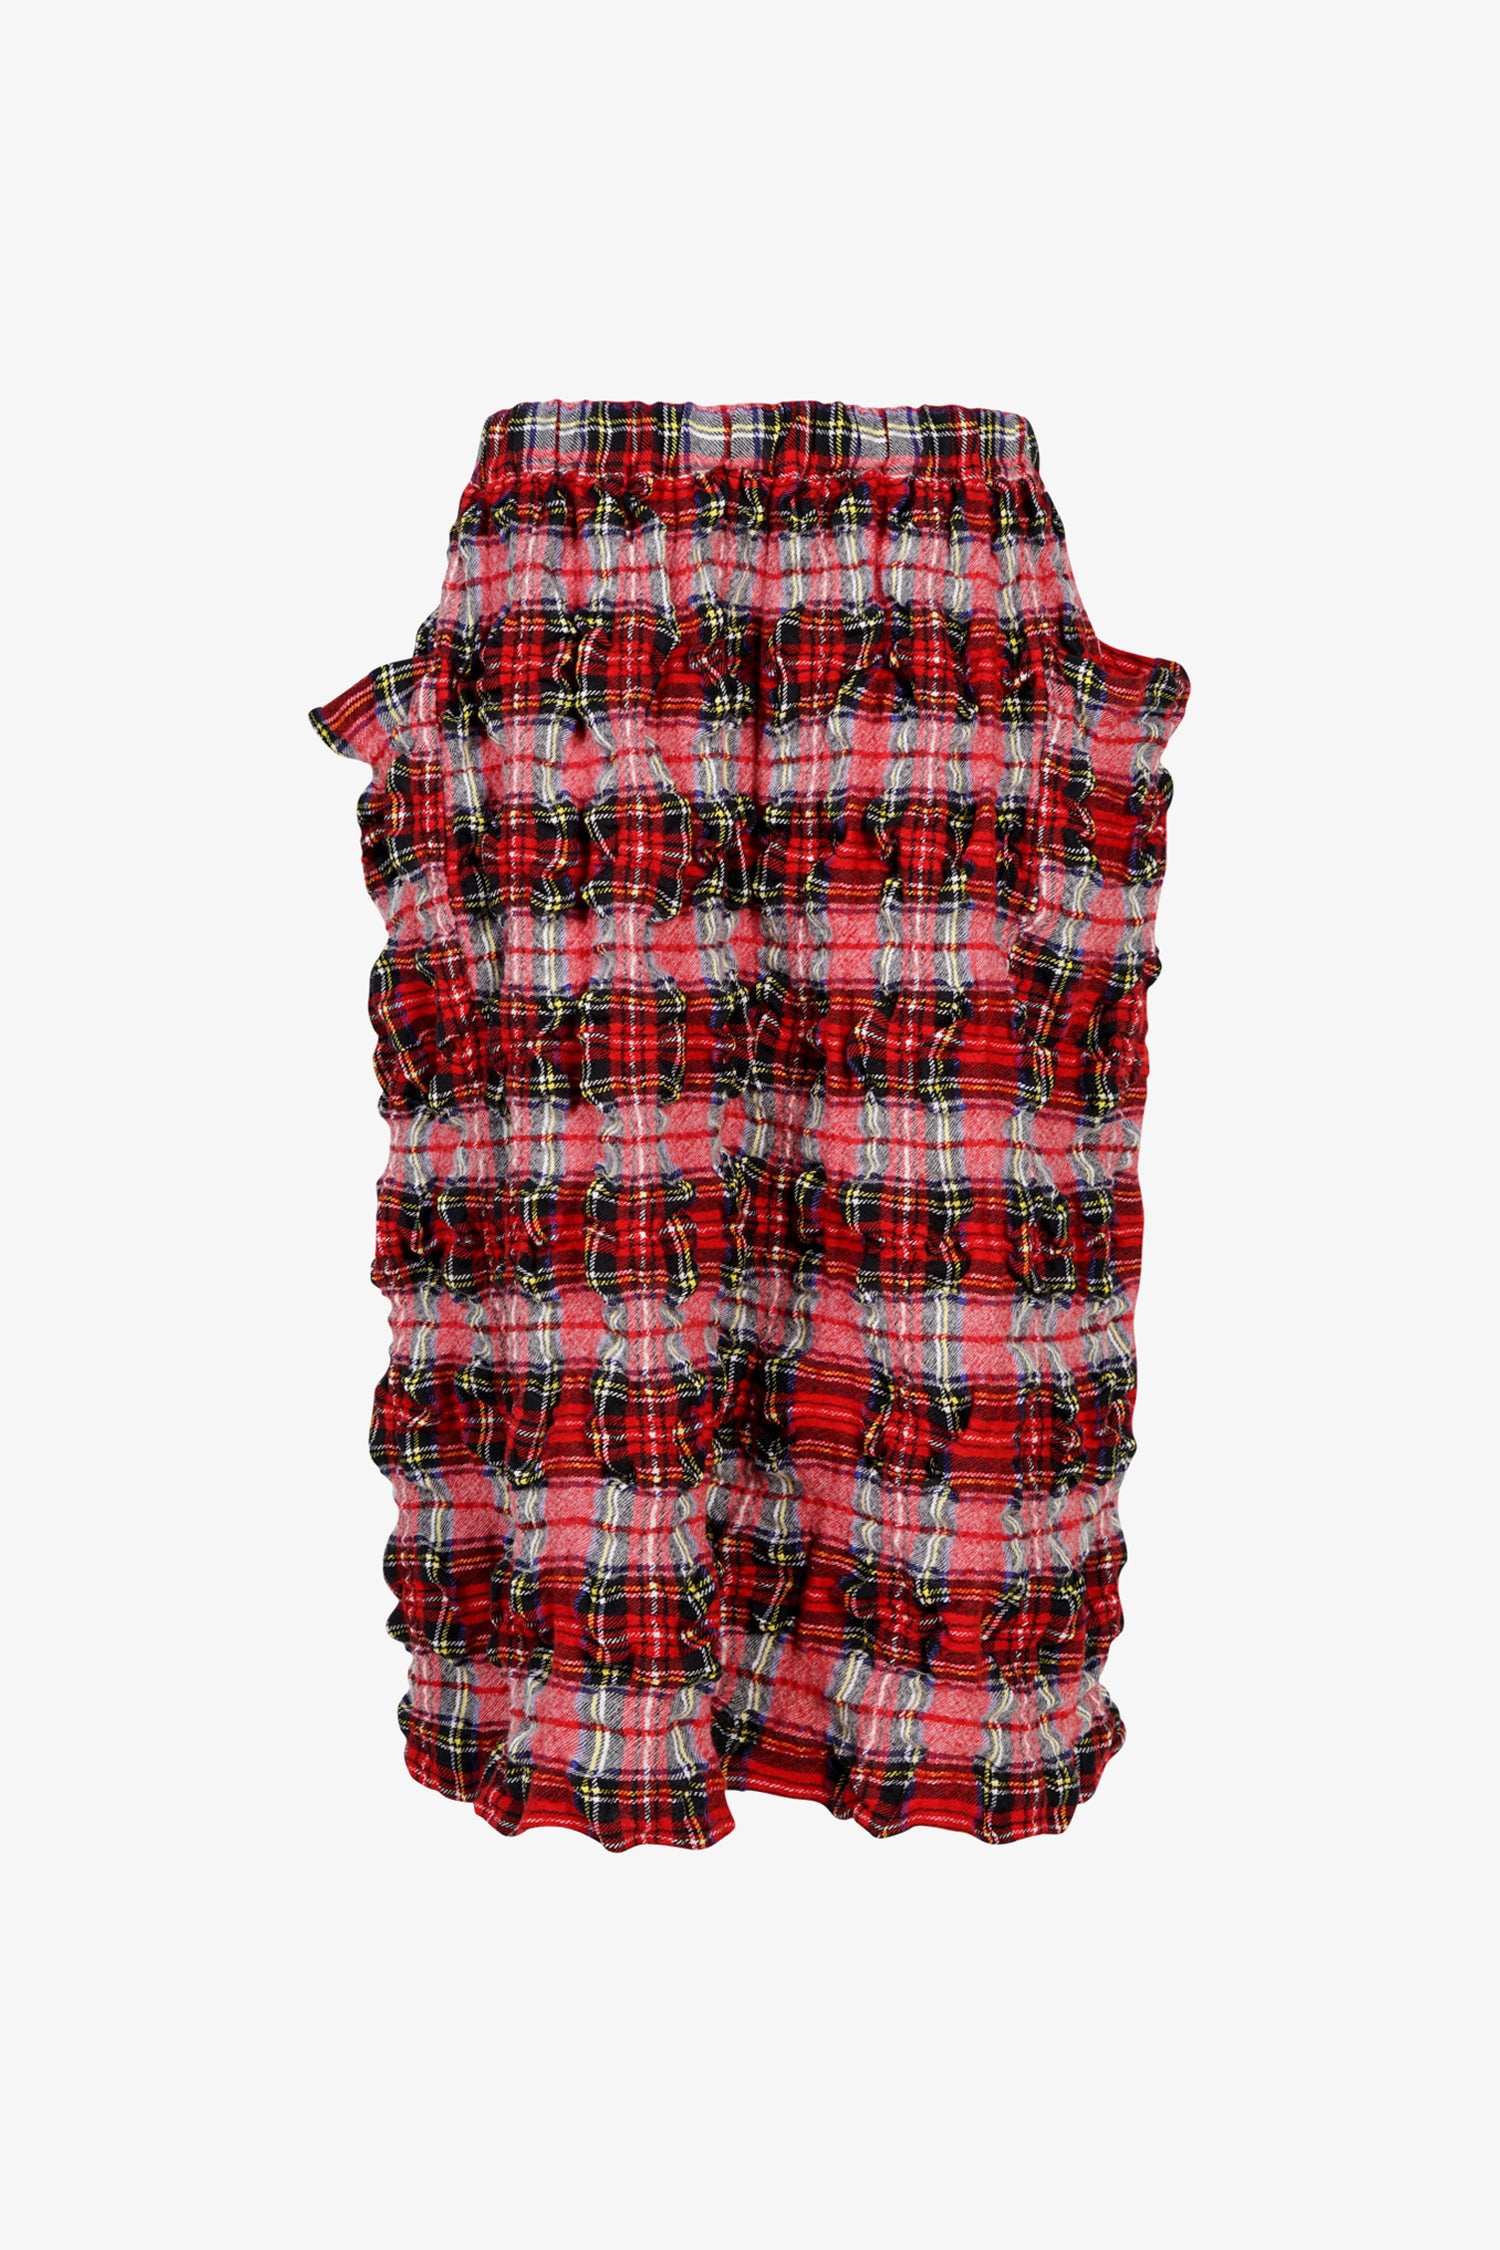 Selectshop FRAME - COMME DES GARÇONS GIRL Ruffled Tartan Wool Skirt Bottoms Dubai